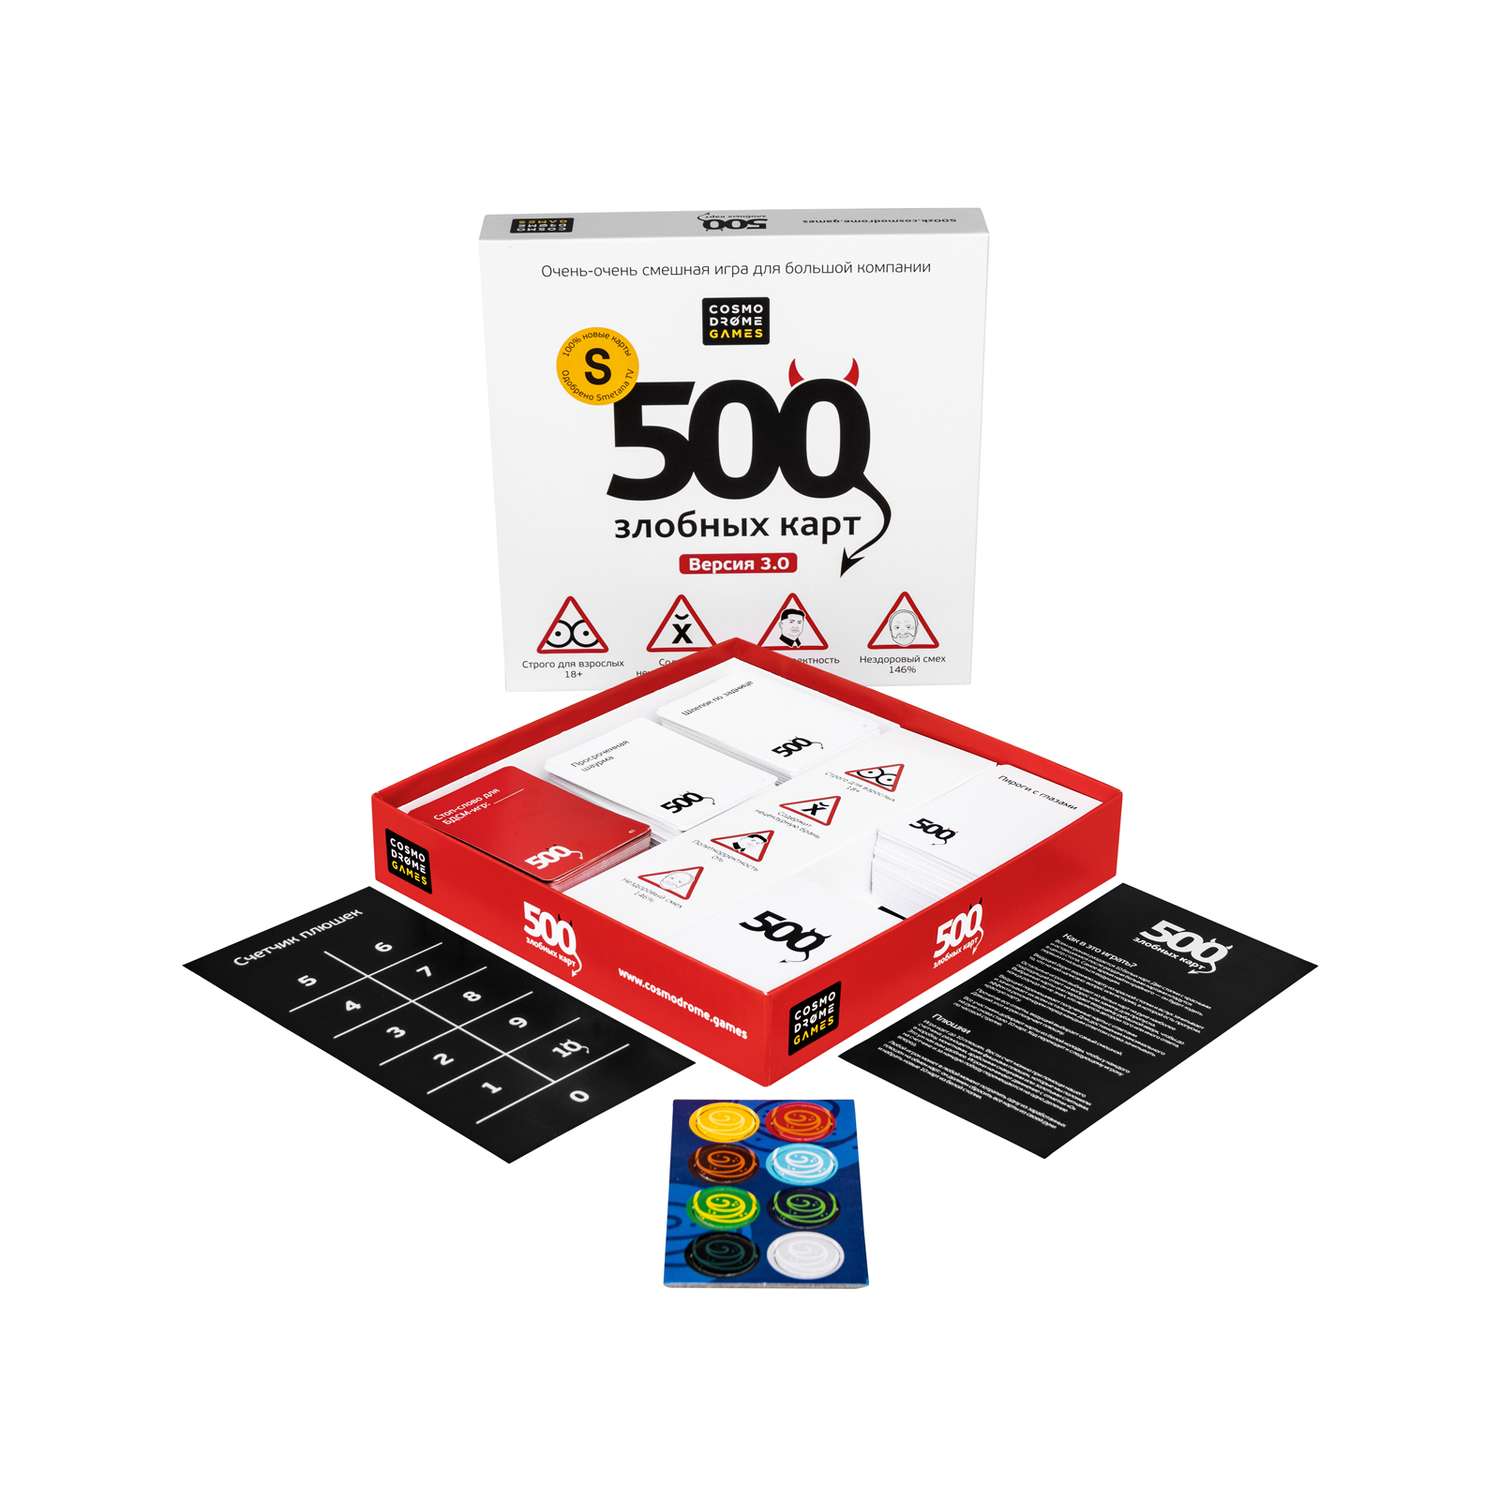 Игра настольная Cosmodrome Games 500злобных карт 3.0 52060 - фото 2